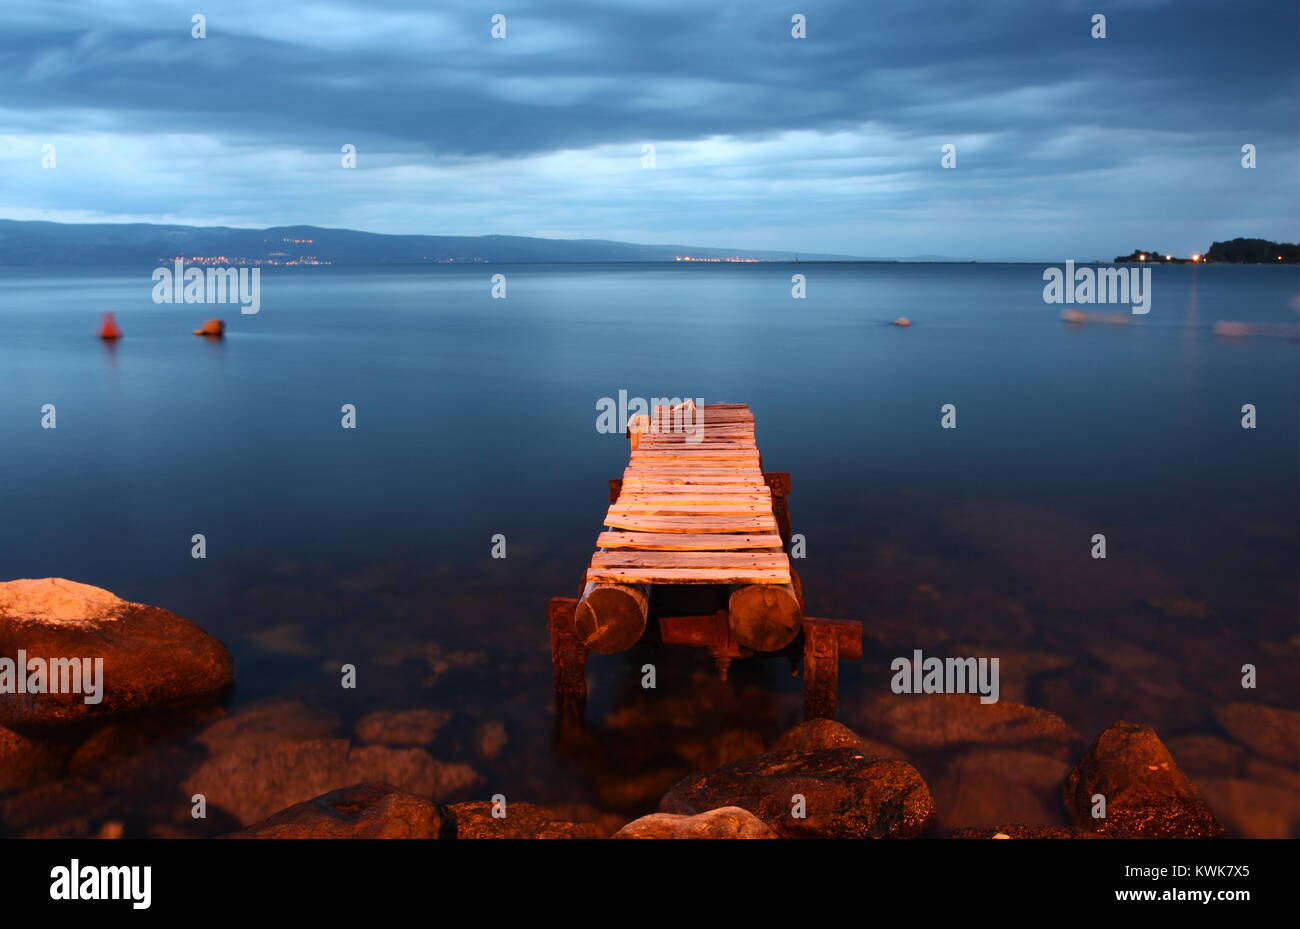 A jetty in the Adriatic Sea in Omis, Dalmatia Stock Photo